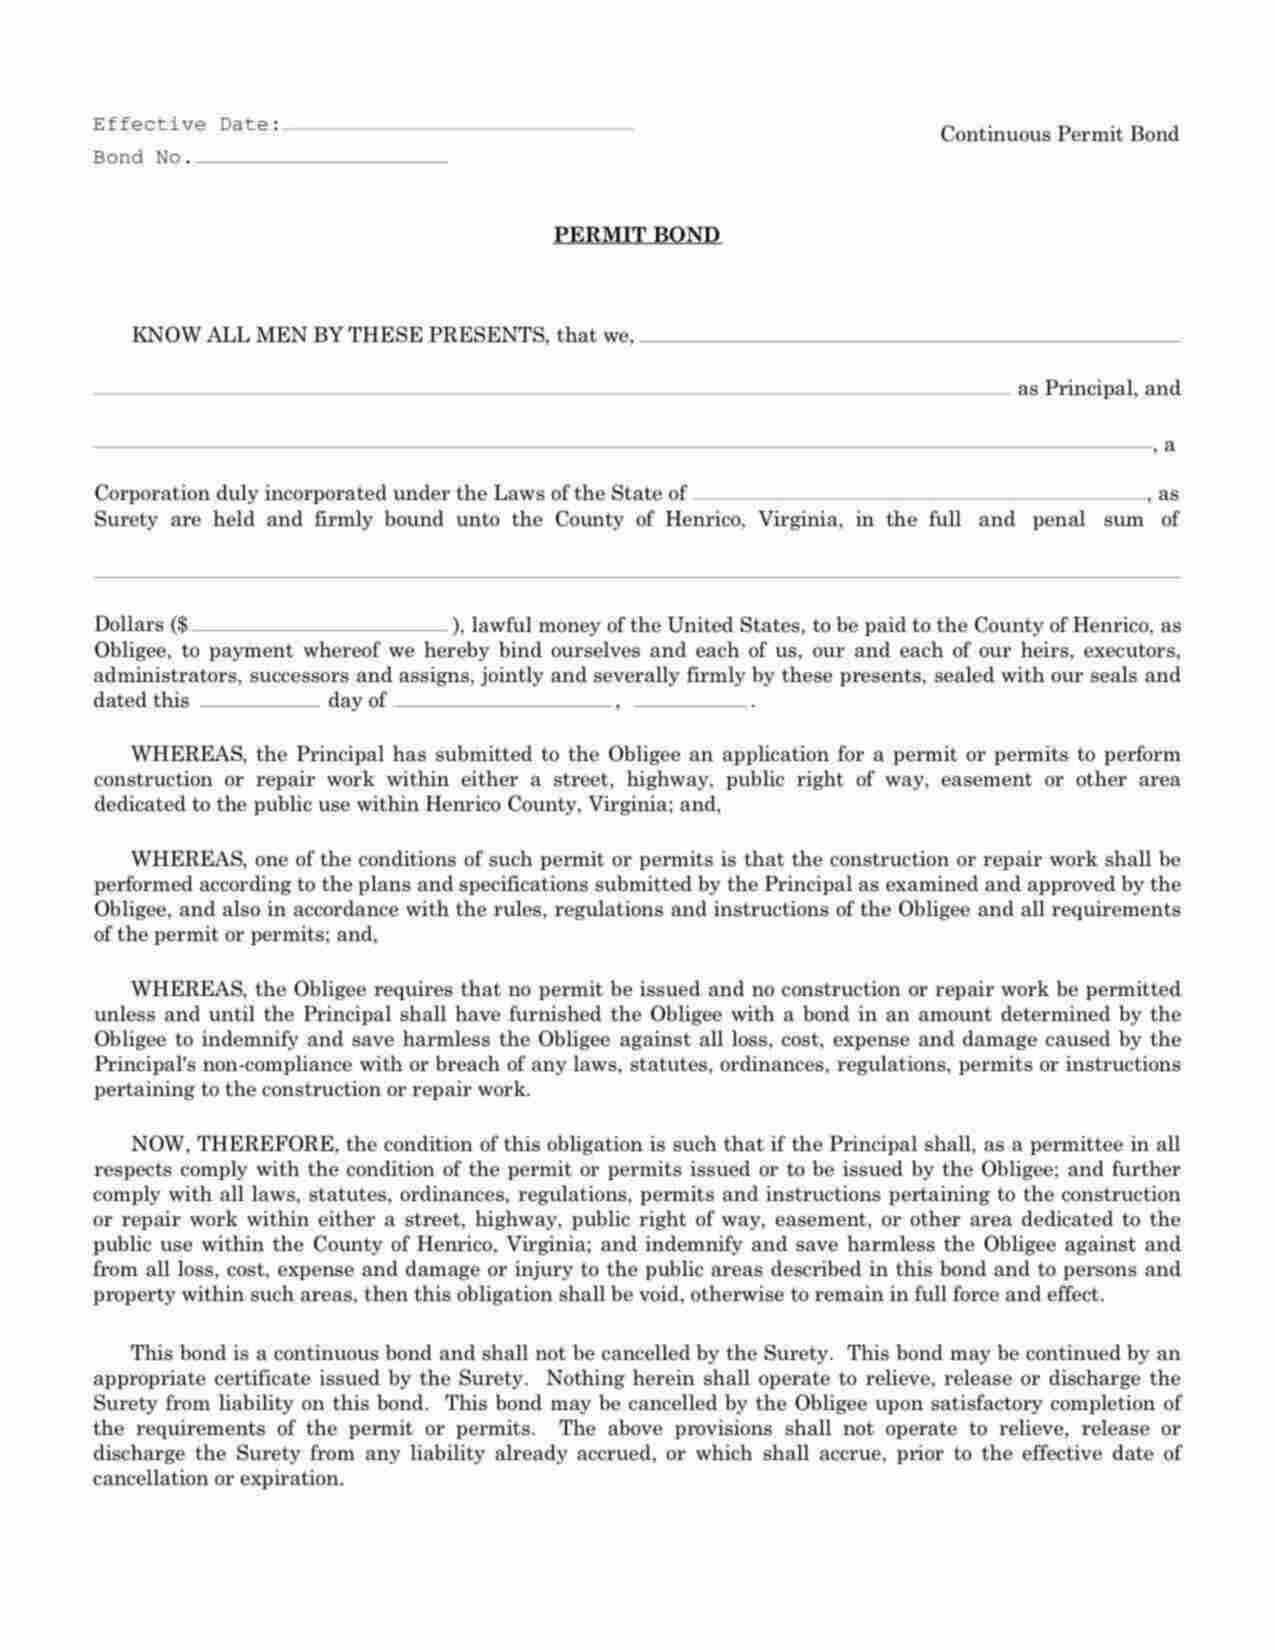 Virginia Permit (Continuous) Bond Form